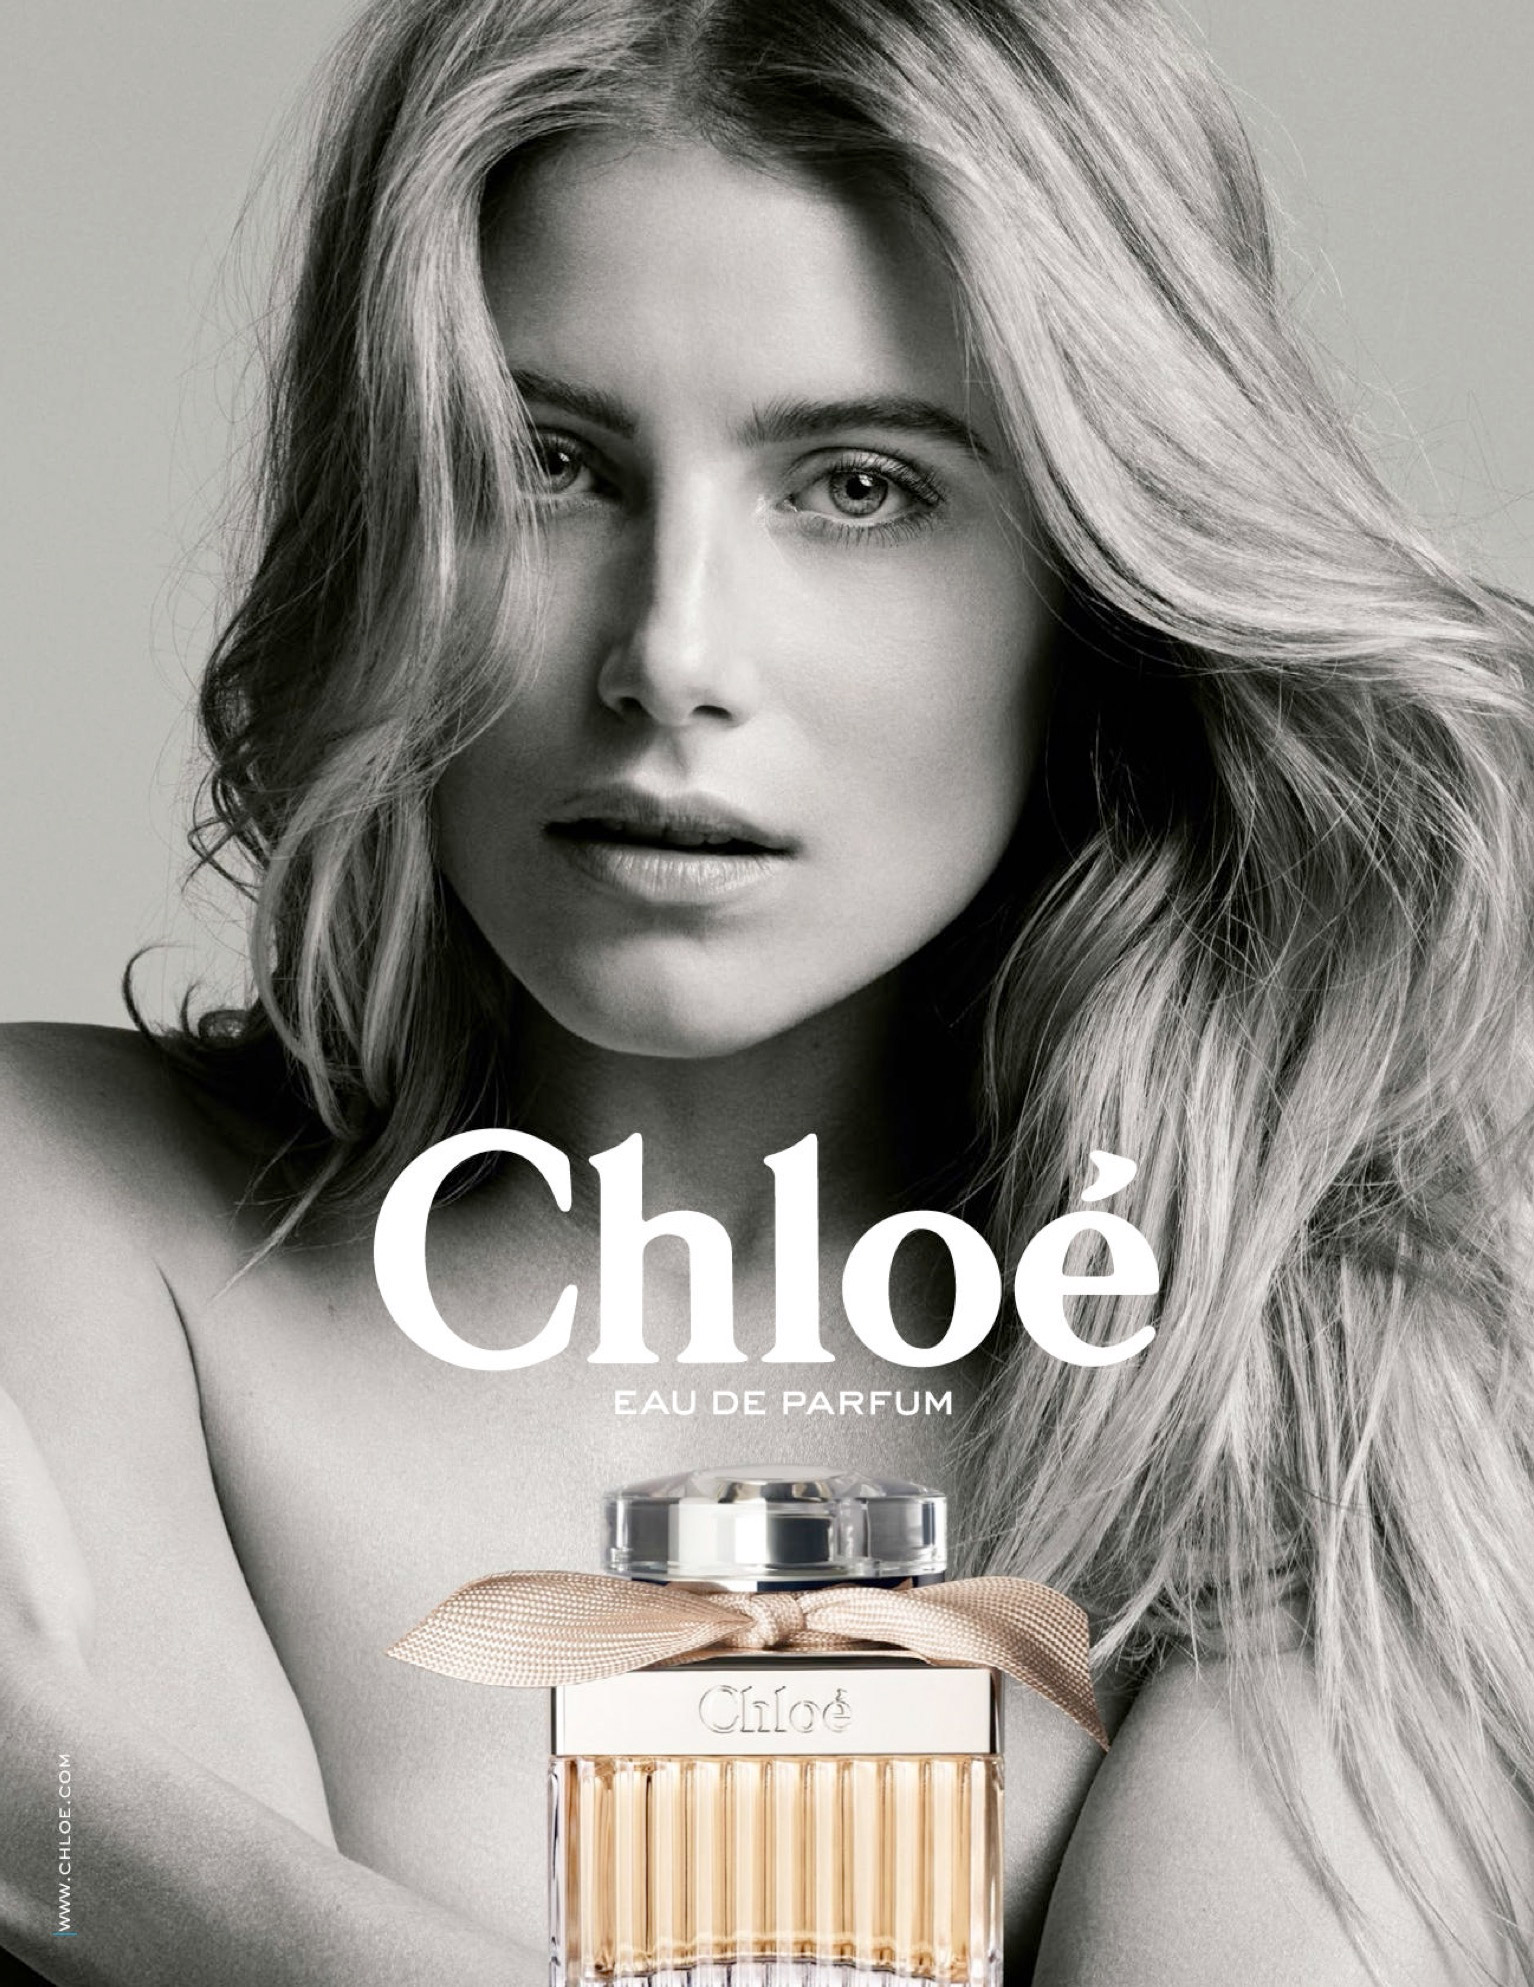 Chloé Eau de Parfum: A Rosy Mood ~ Fragrance Reviews